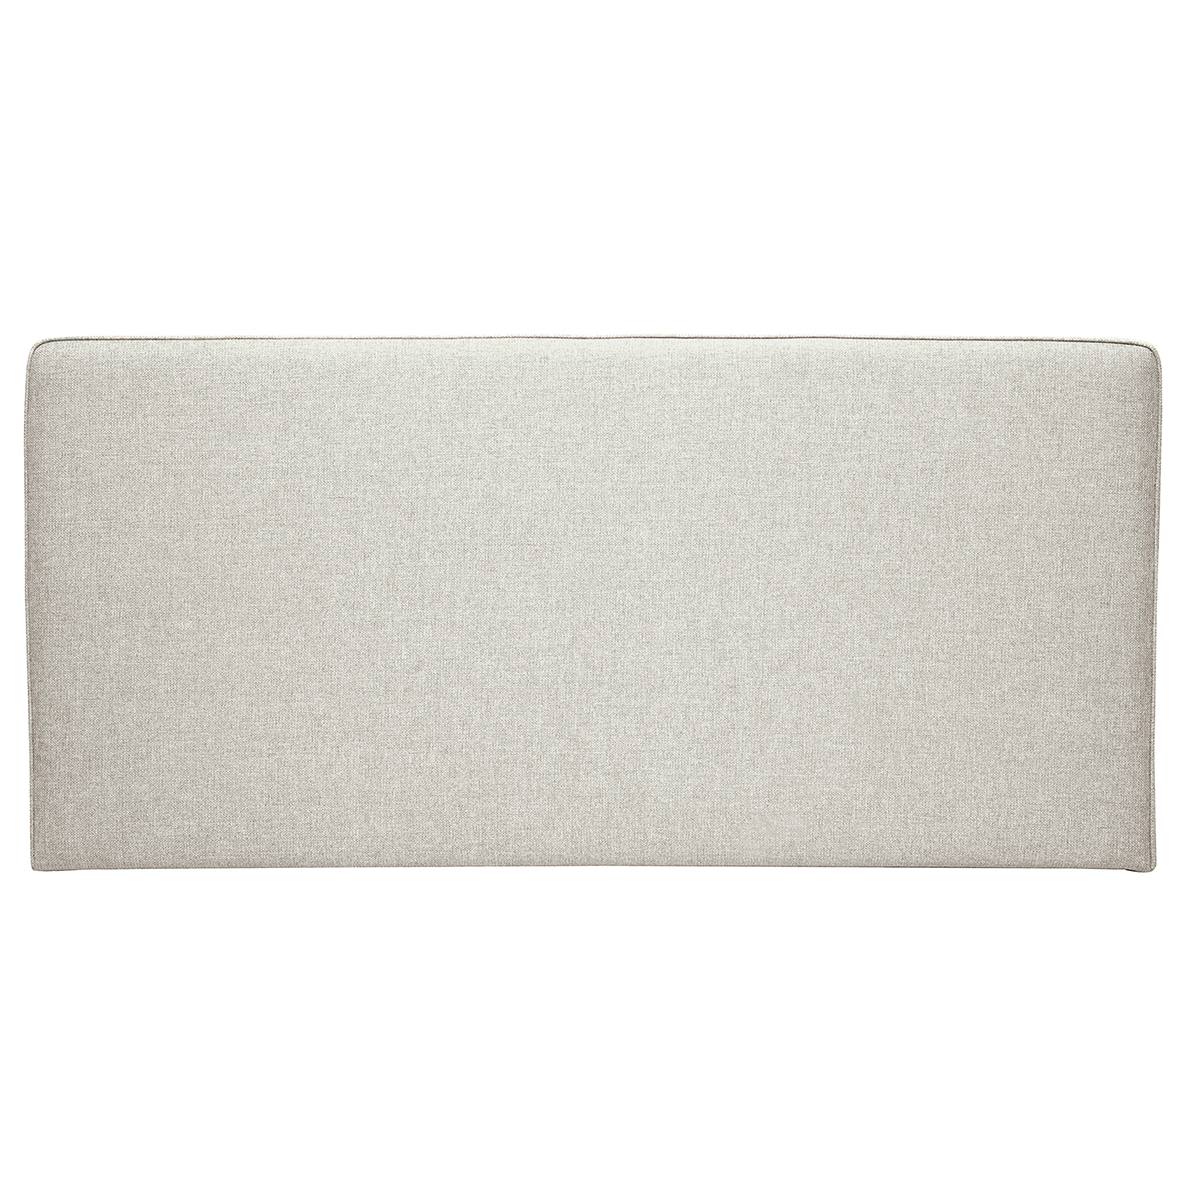 Testata letto a muro in tessuto beige L160 cm LILY